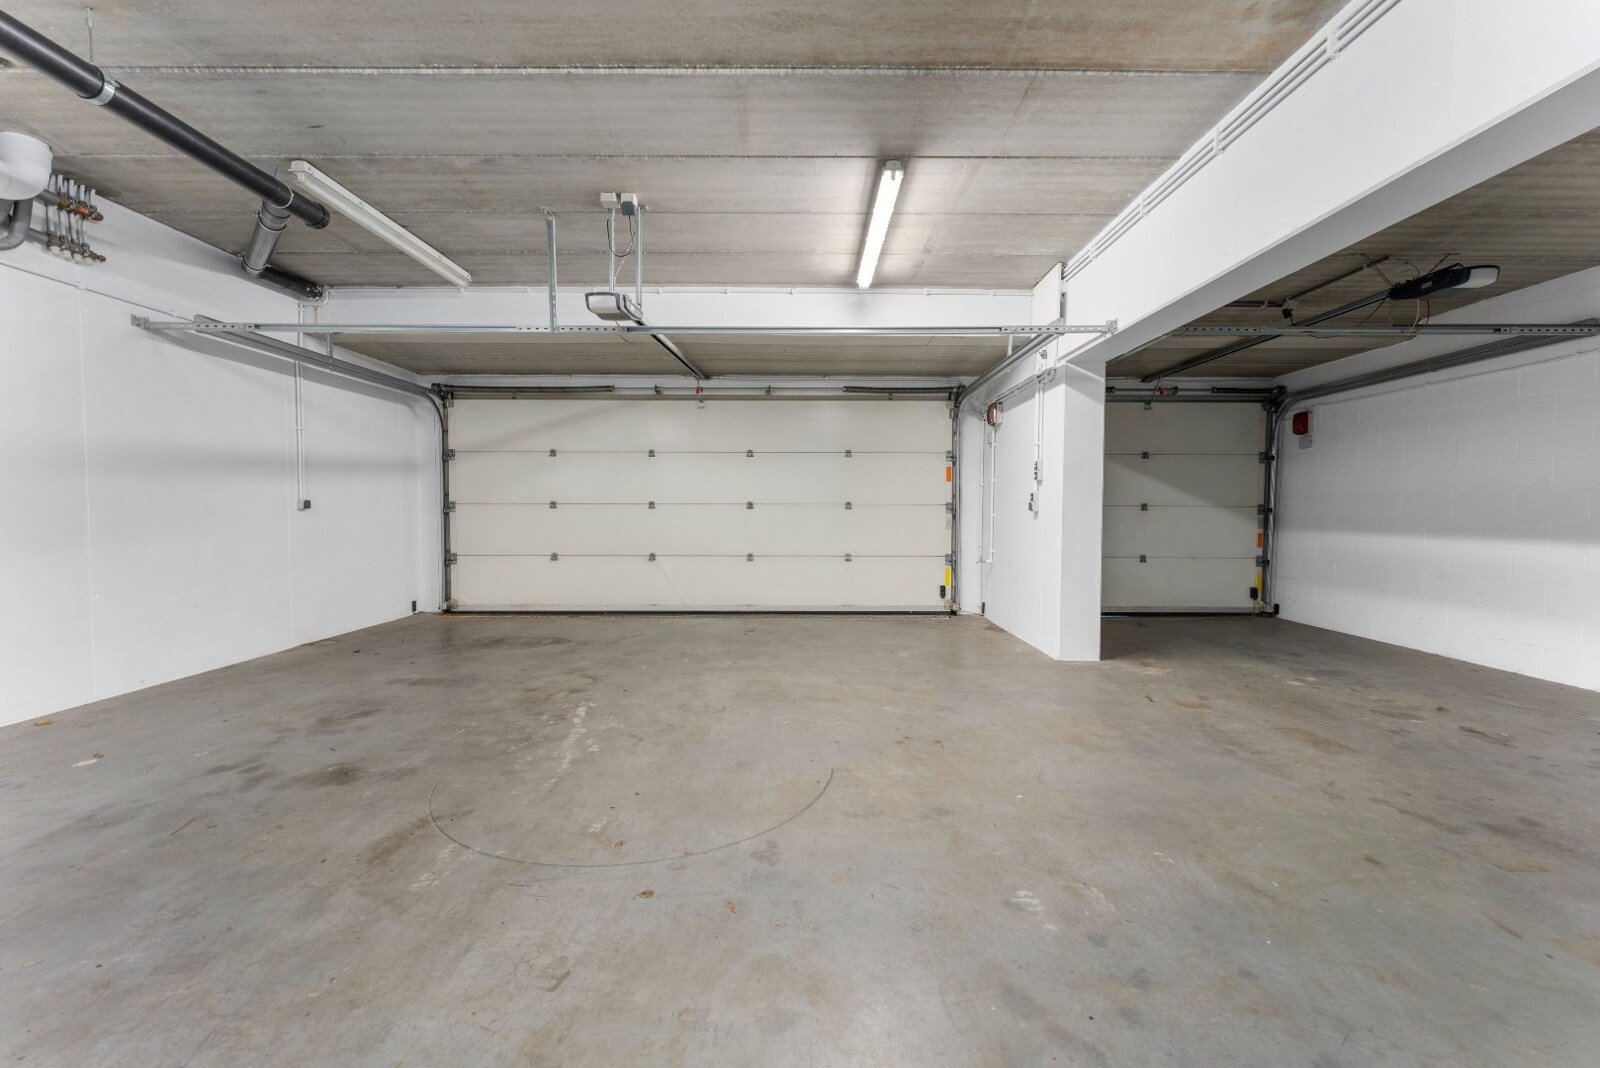 Charmante woning met ondergrondse garage voor 3 auto’s aan de Oosthoek 16